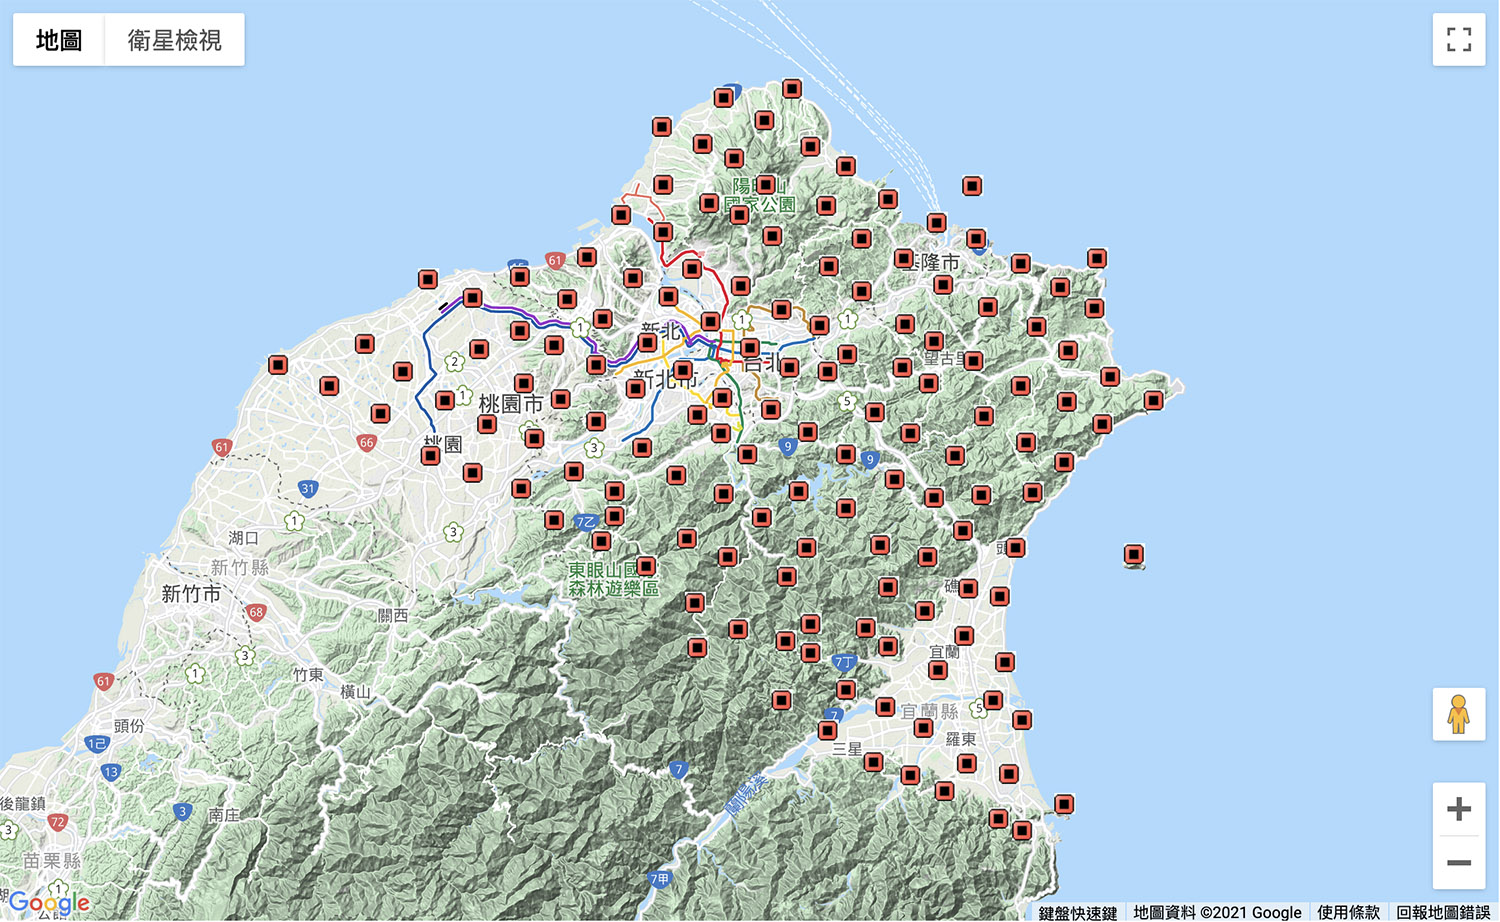 臺灣陣列地震站分布圖，圖中約有 140 個測站，安裝有寬頻地震儀並即時蒐集傳送地震資料，此計畫由中央研究院地球科學研究所（IES）與大屯火山觀測站（TVO）共同執行。圖│Formosa Array 臺灣陣列